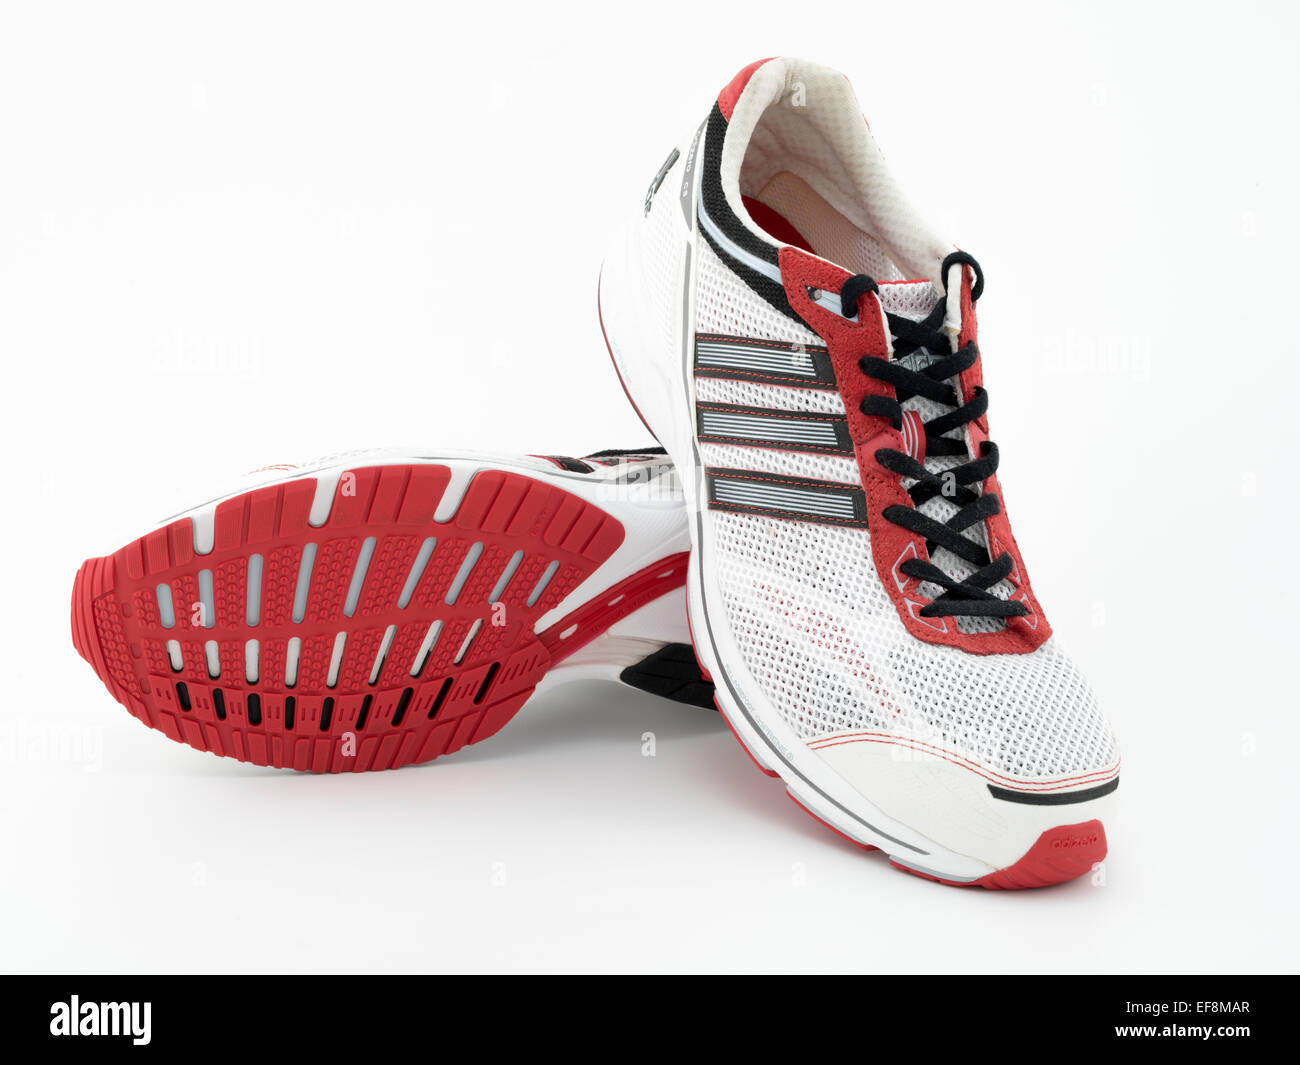 Adidas AdiZero CS una zapatilla ligera diseñada para carreras, 10K, carreras de maratón. Foto de stock